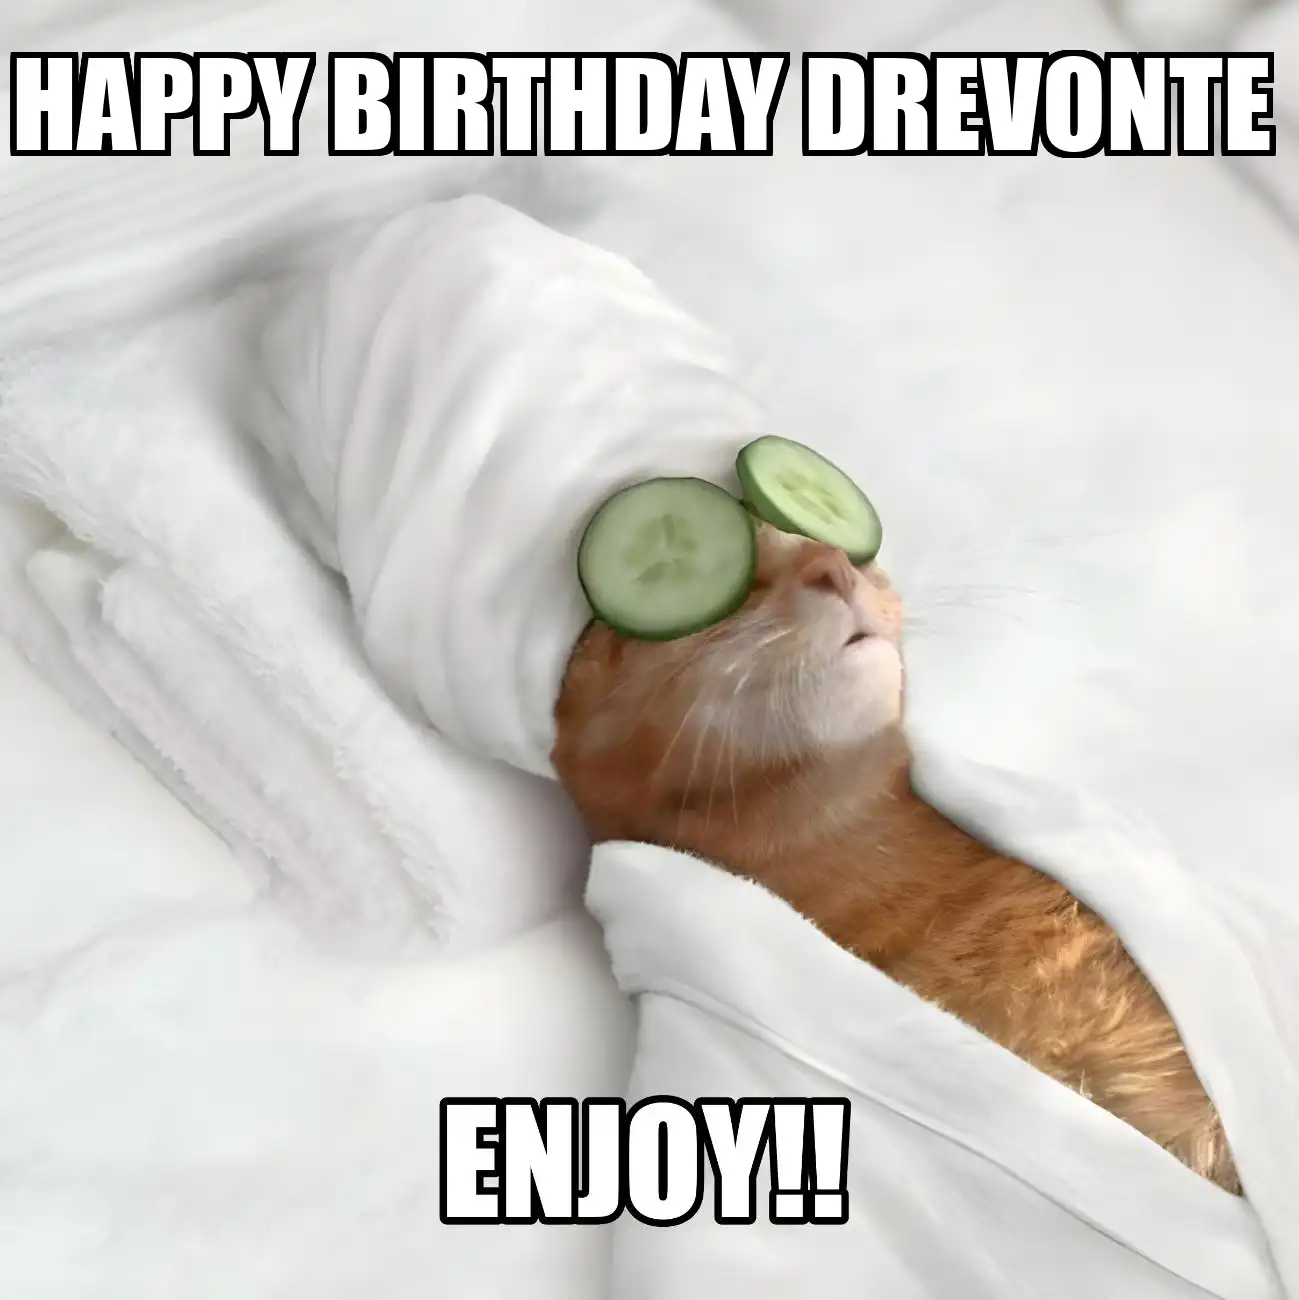 Happy Birthday Drevonte Enjoy Cat Meme